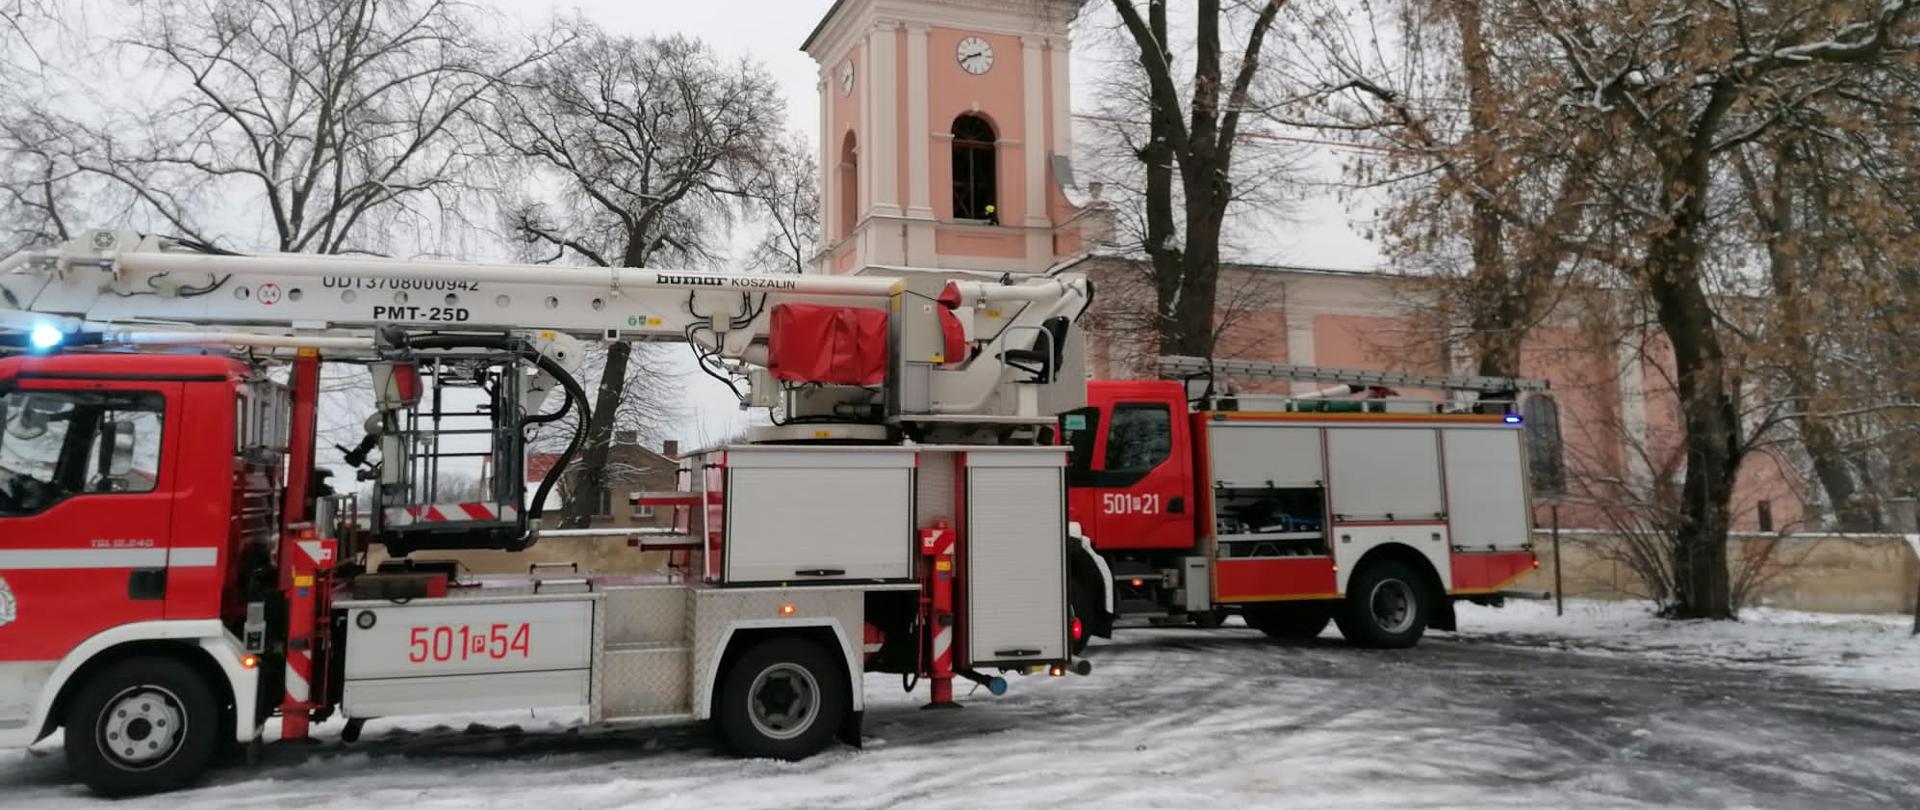 Zdjęcie przedstawia pojazdy pożarnicze przed kościołem w Kwilczu.